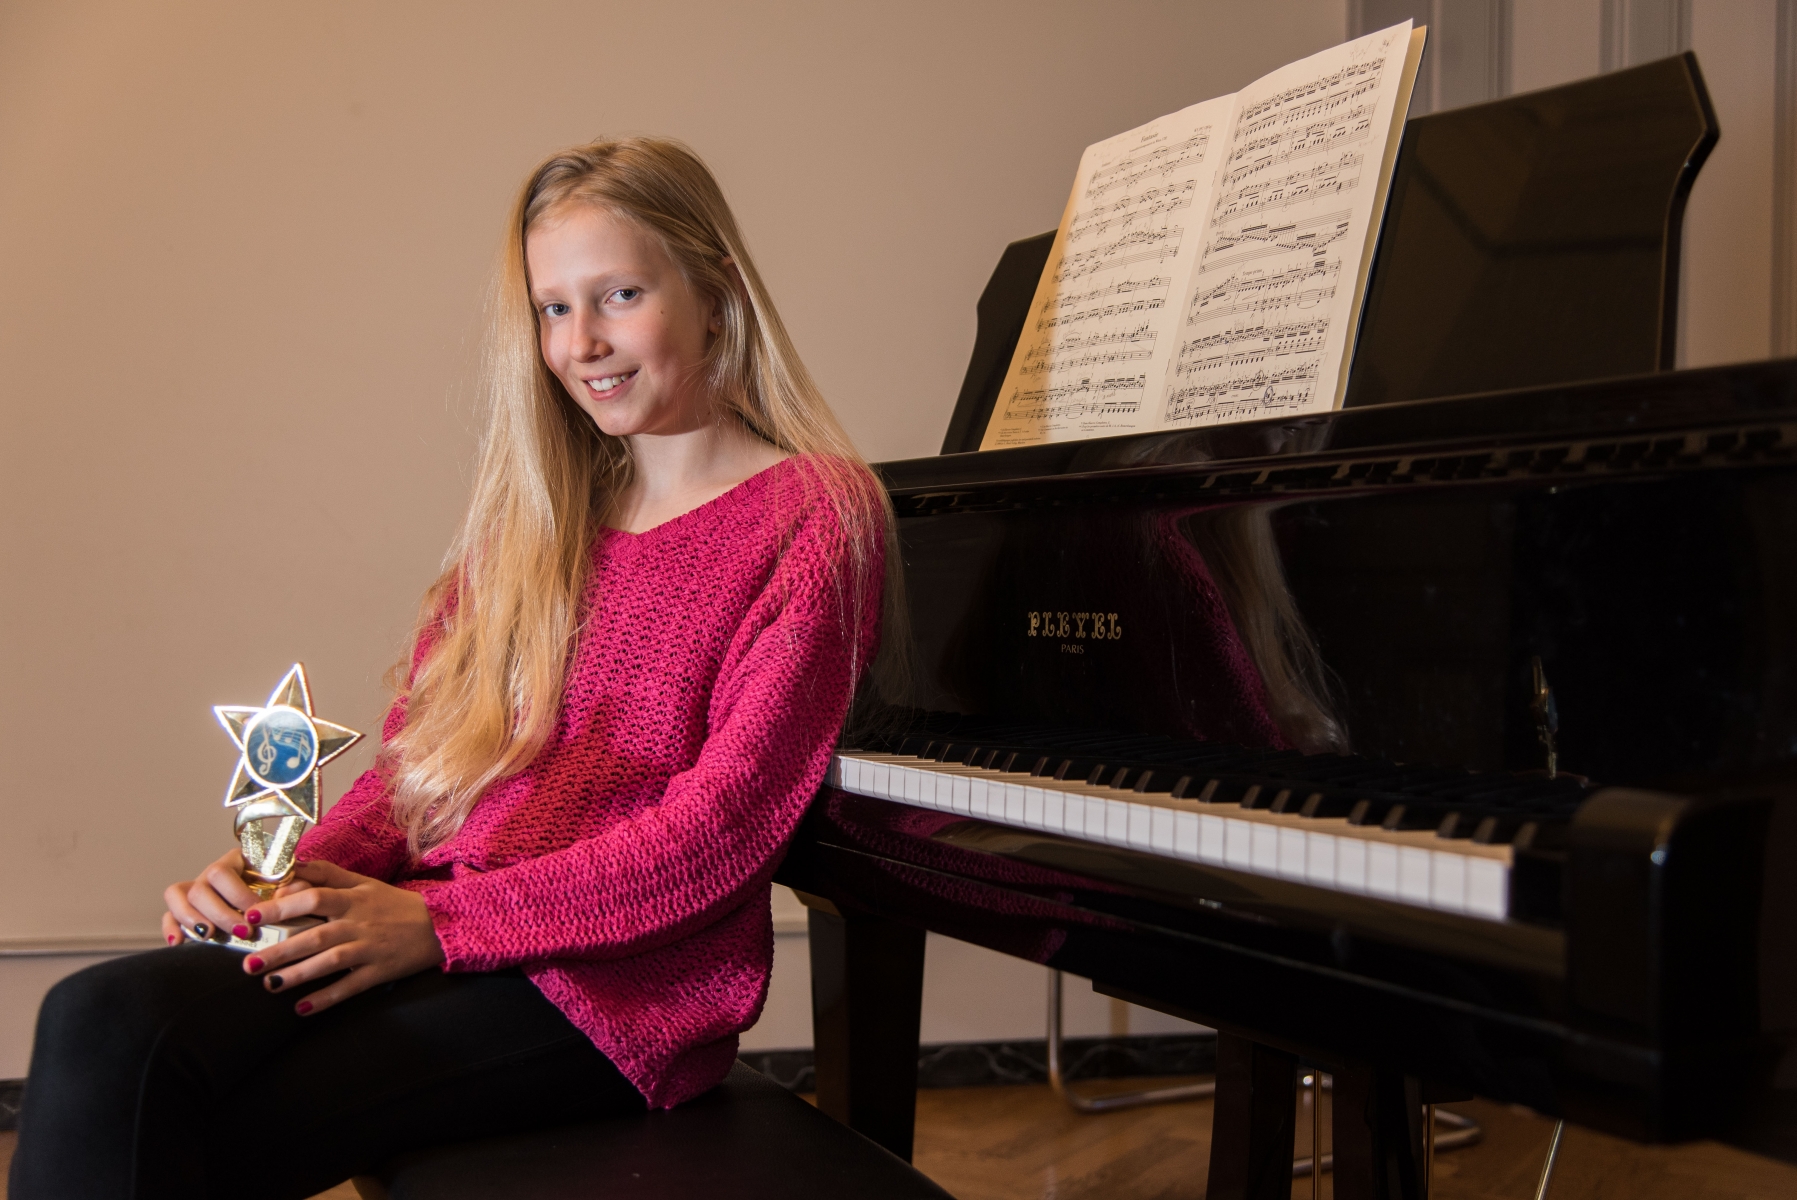 Nyon, mercredi 11.03.2015, Conservatoire, portrait de la jeune pianiste Laetitia Exertier qui a gagné un concours à New York, photos Cédric Sandoz